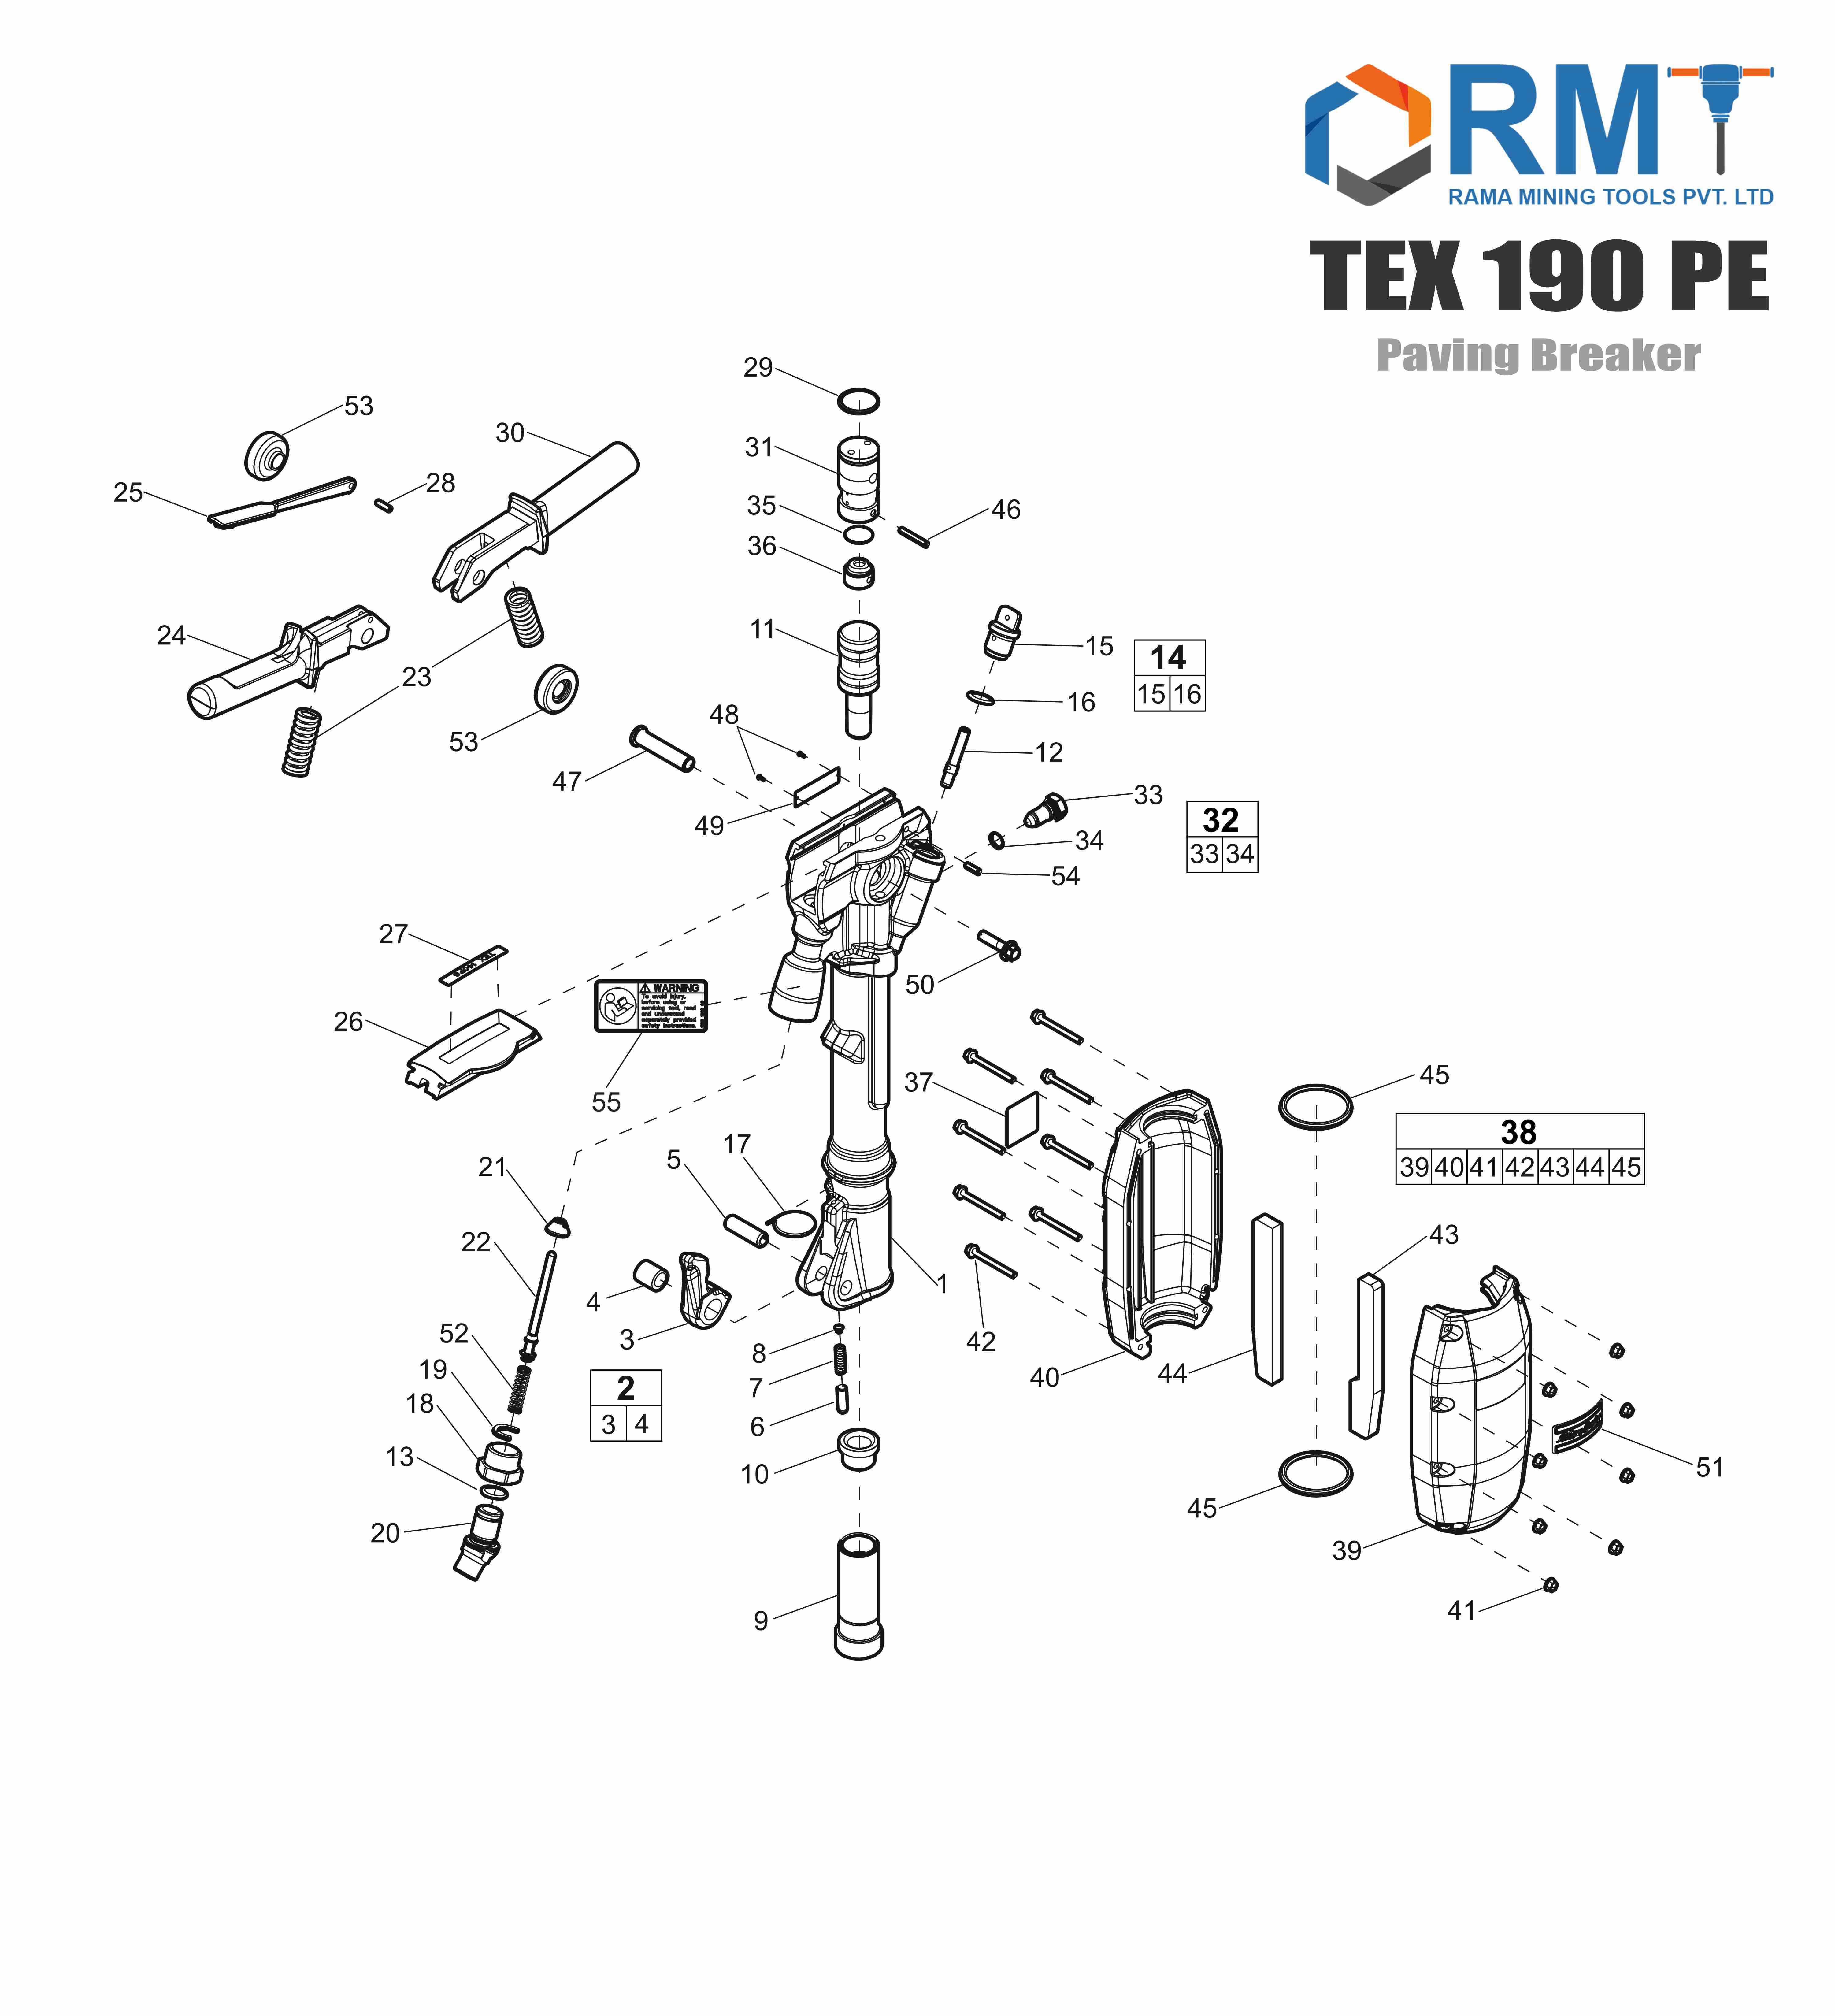 TEX 190 PE - Pneumatic Breaker